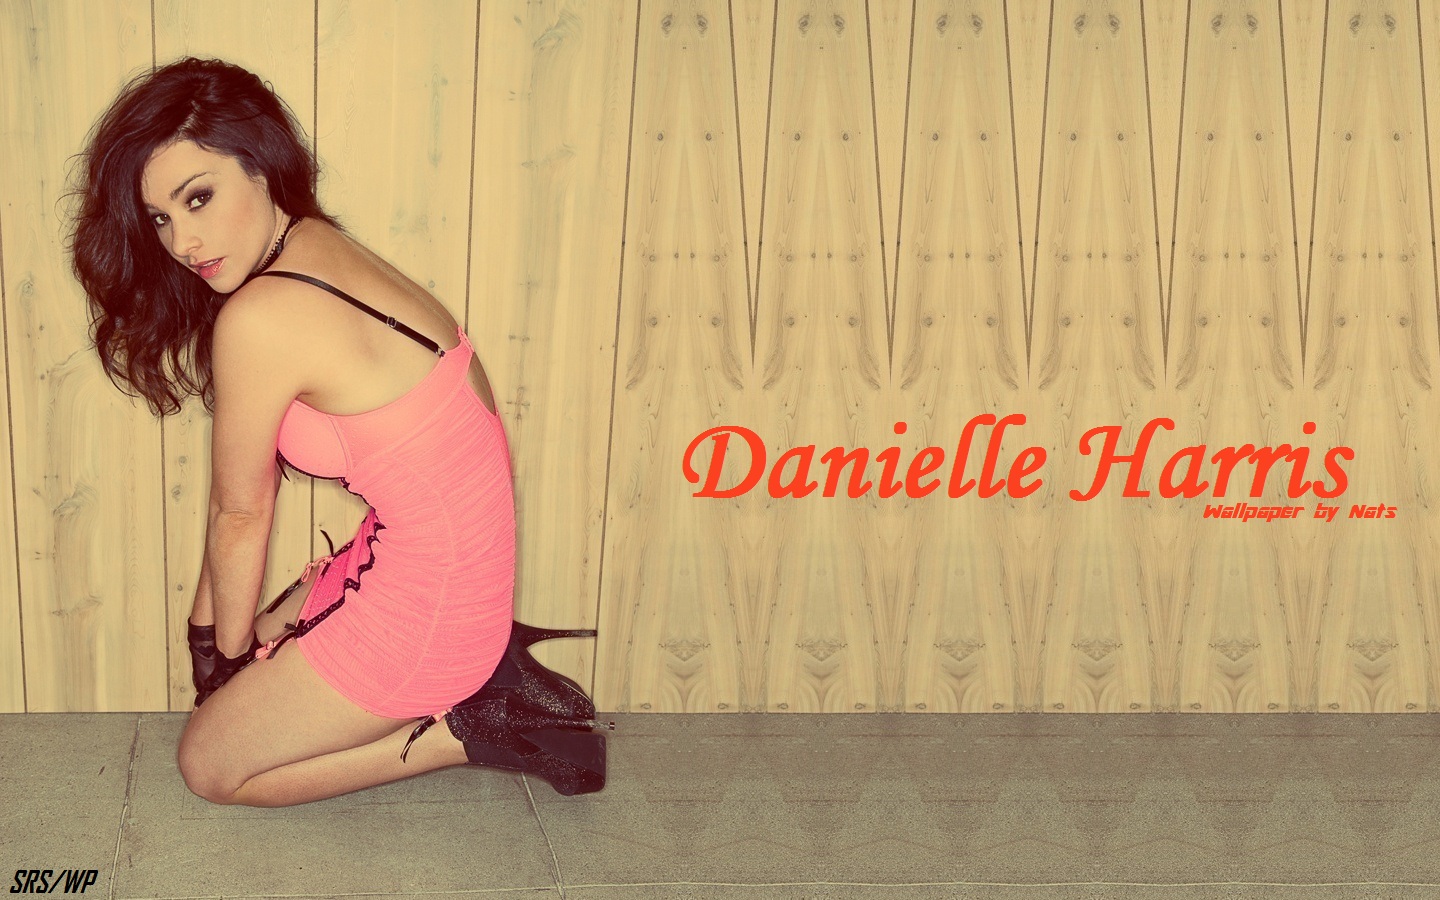 Danielle Harris. 